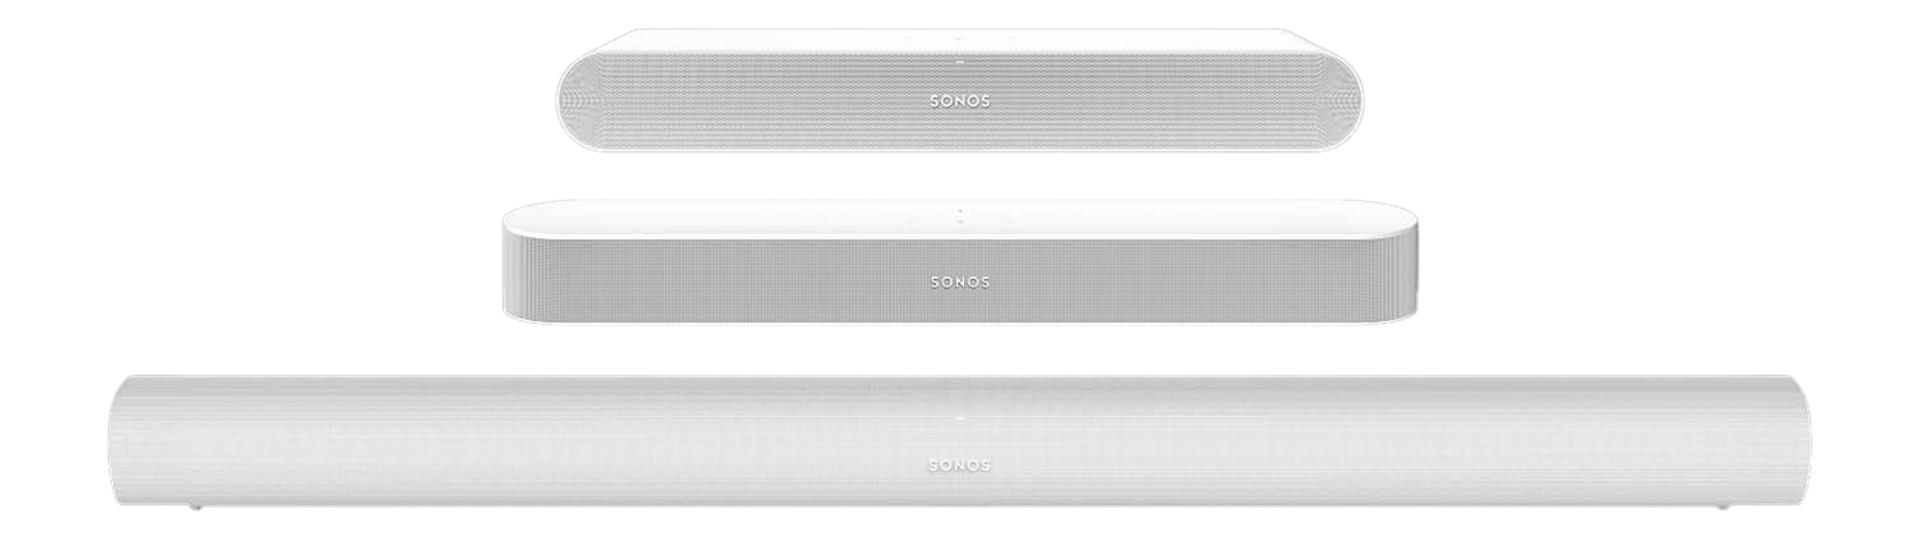 Sonos Arc review: The smart Dolby Atmos soundbar to beat